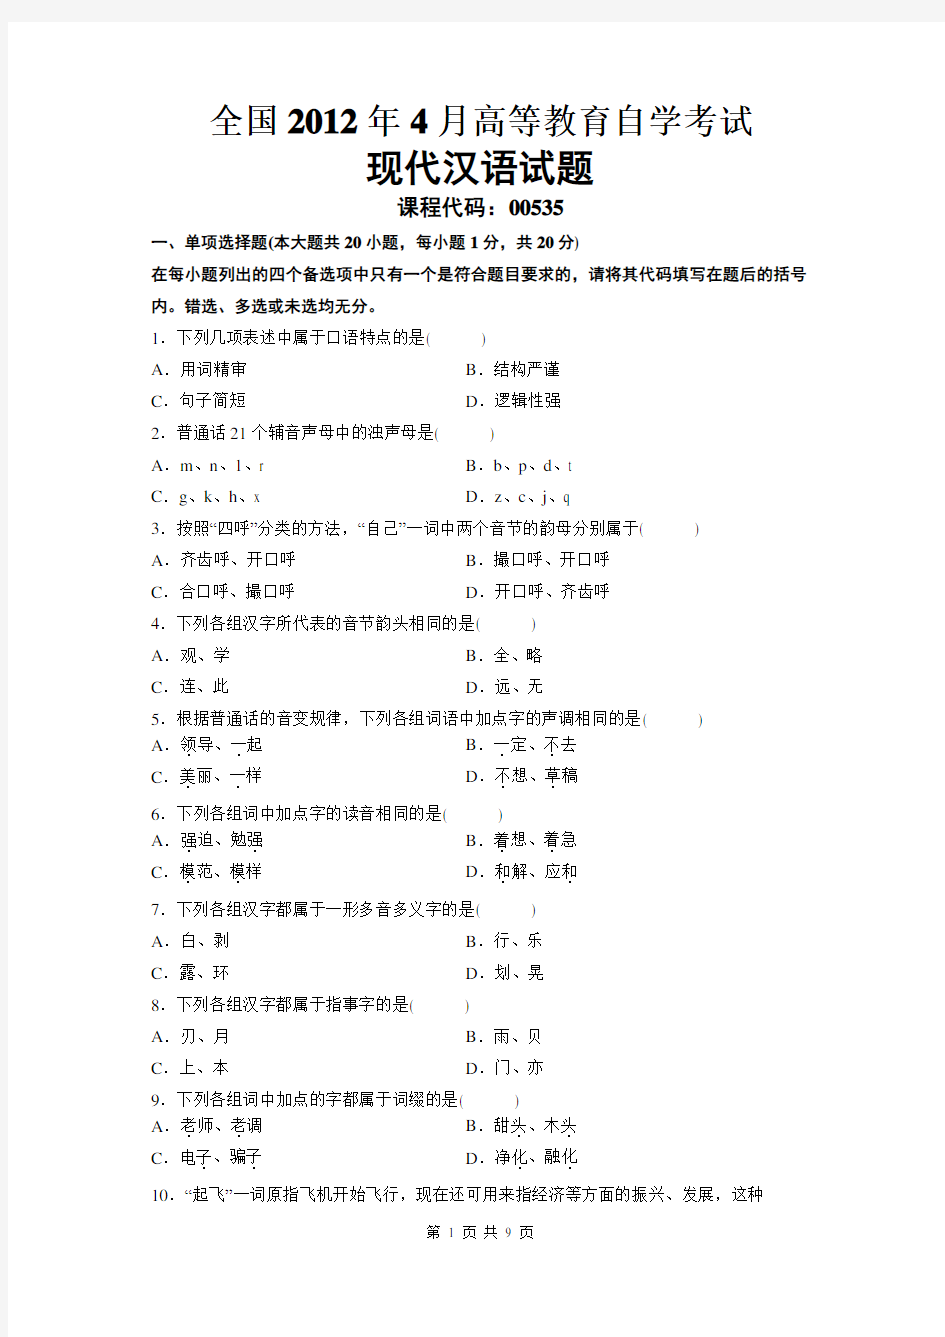 现代汉语-自学考试真题及解析2012年4月